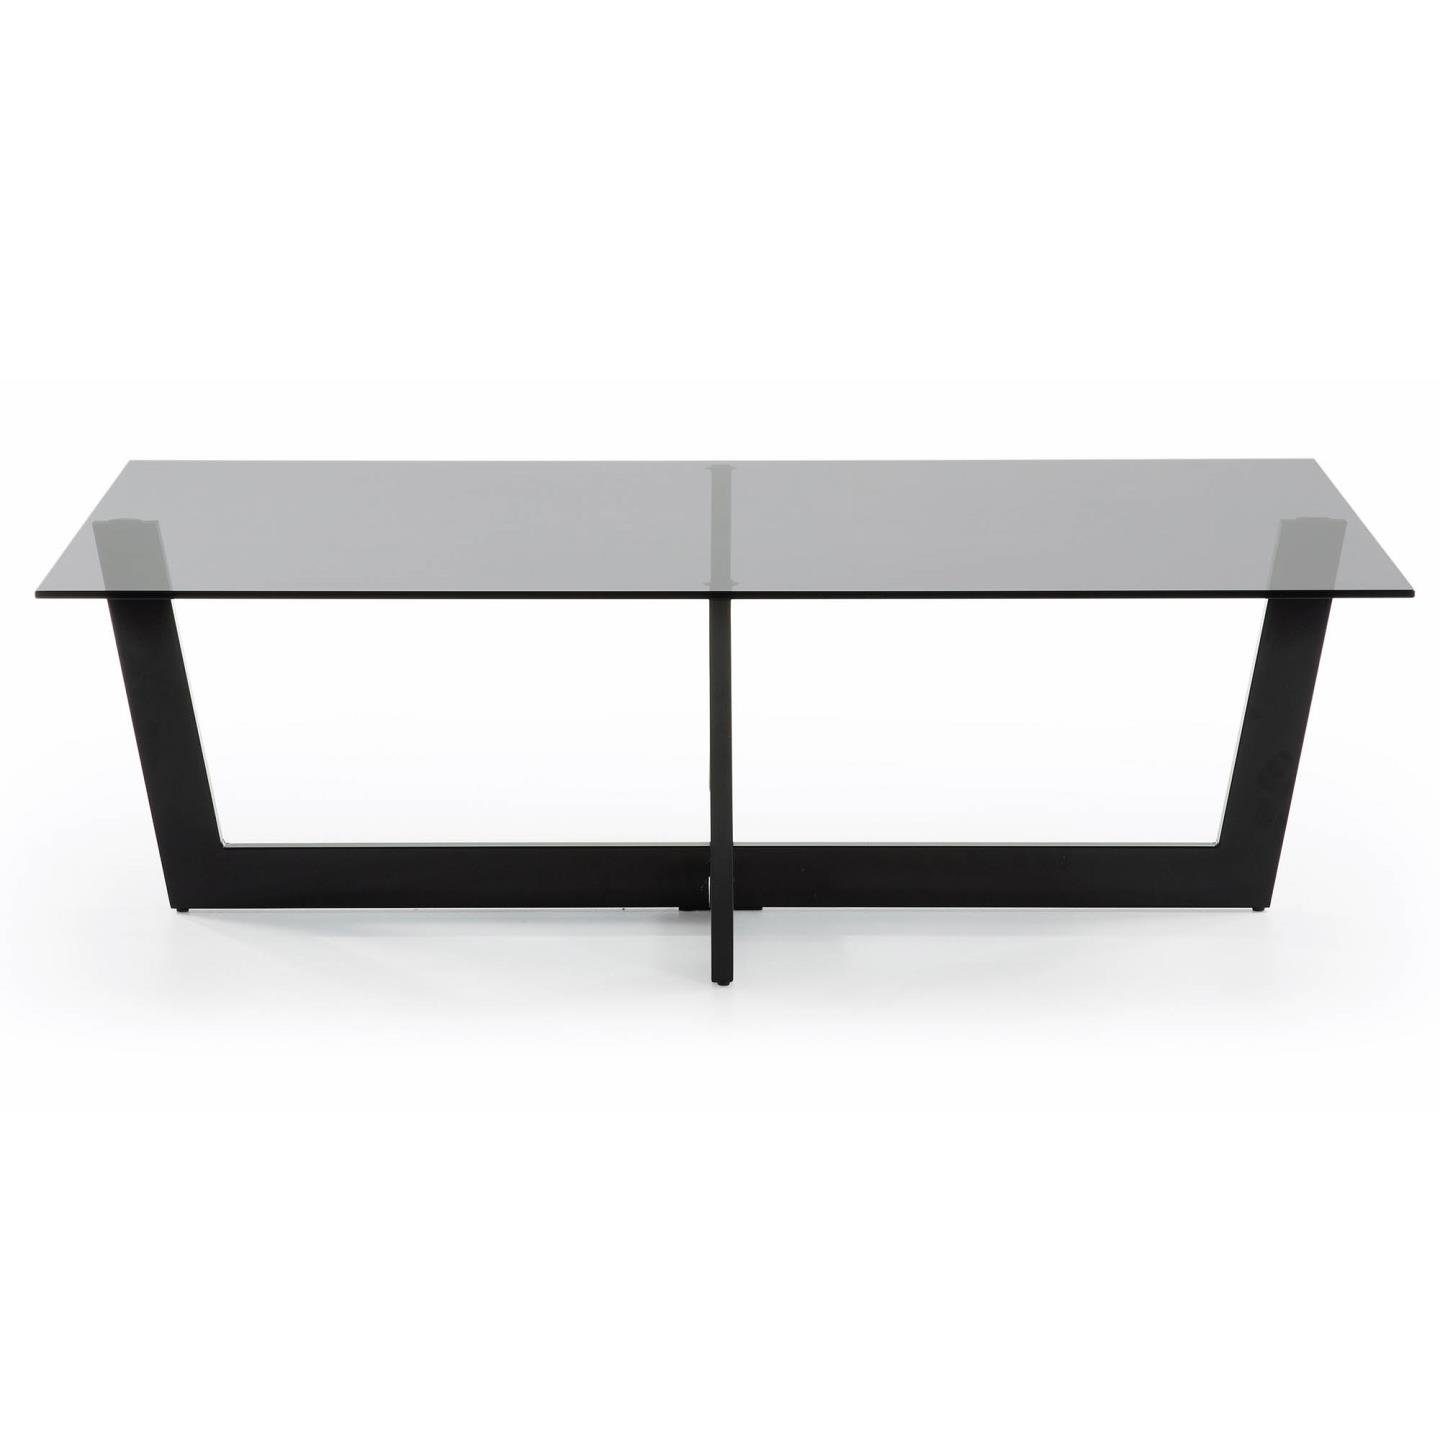 Natur24 Beistelltisch Couchtisch Plam Glas schwarz Stahlstruktur 120x70cm Tisch